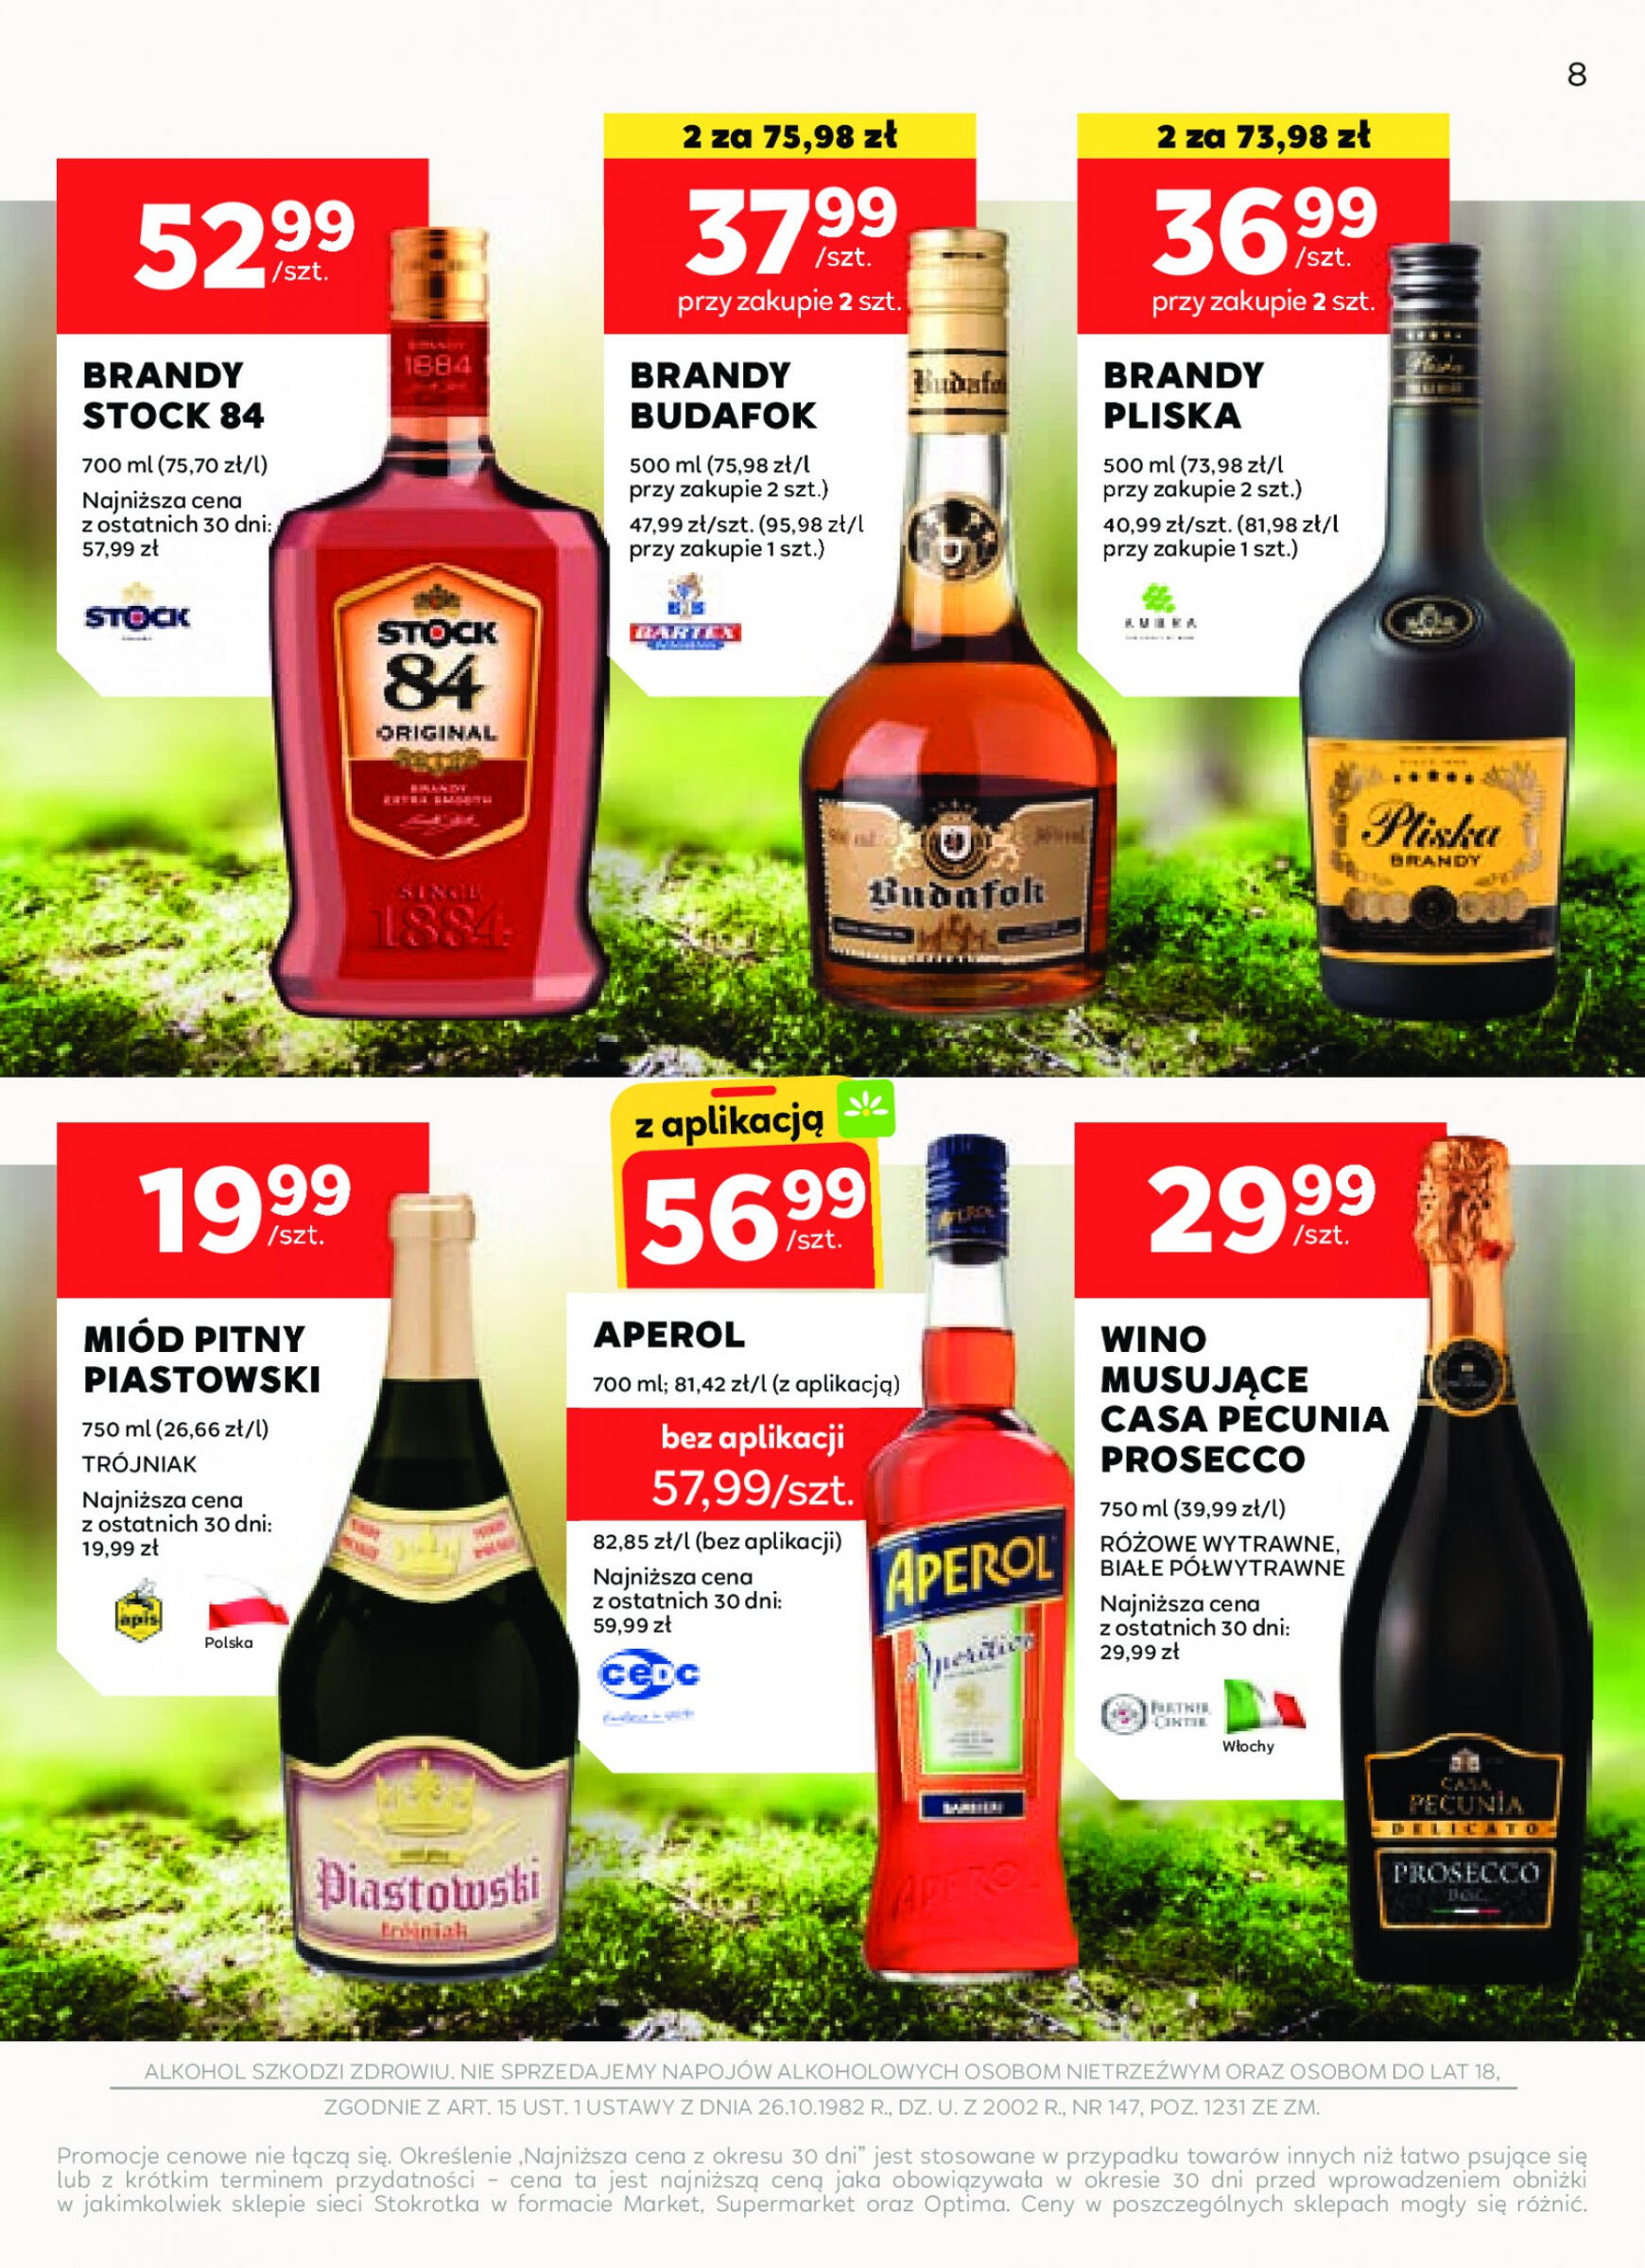 stokrotka - Stokrotka Supermarket - Oferta alkoholowa gazetka aktualna ważna od 25.04. - 22.05. - page: 8